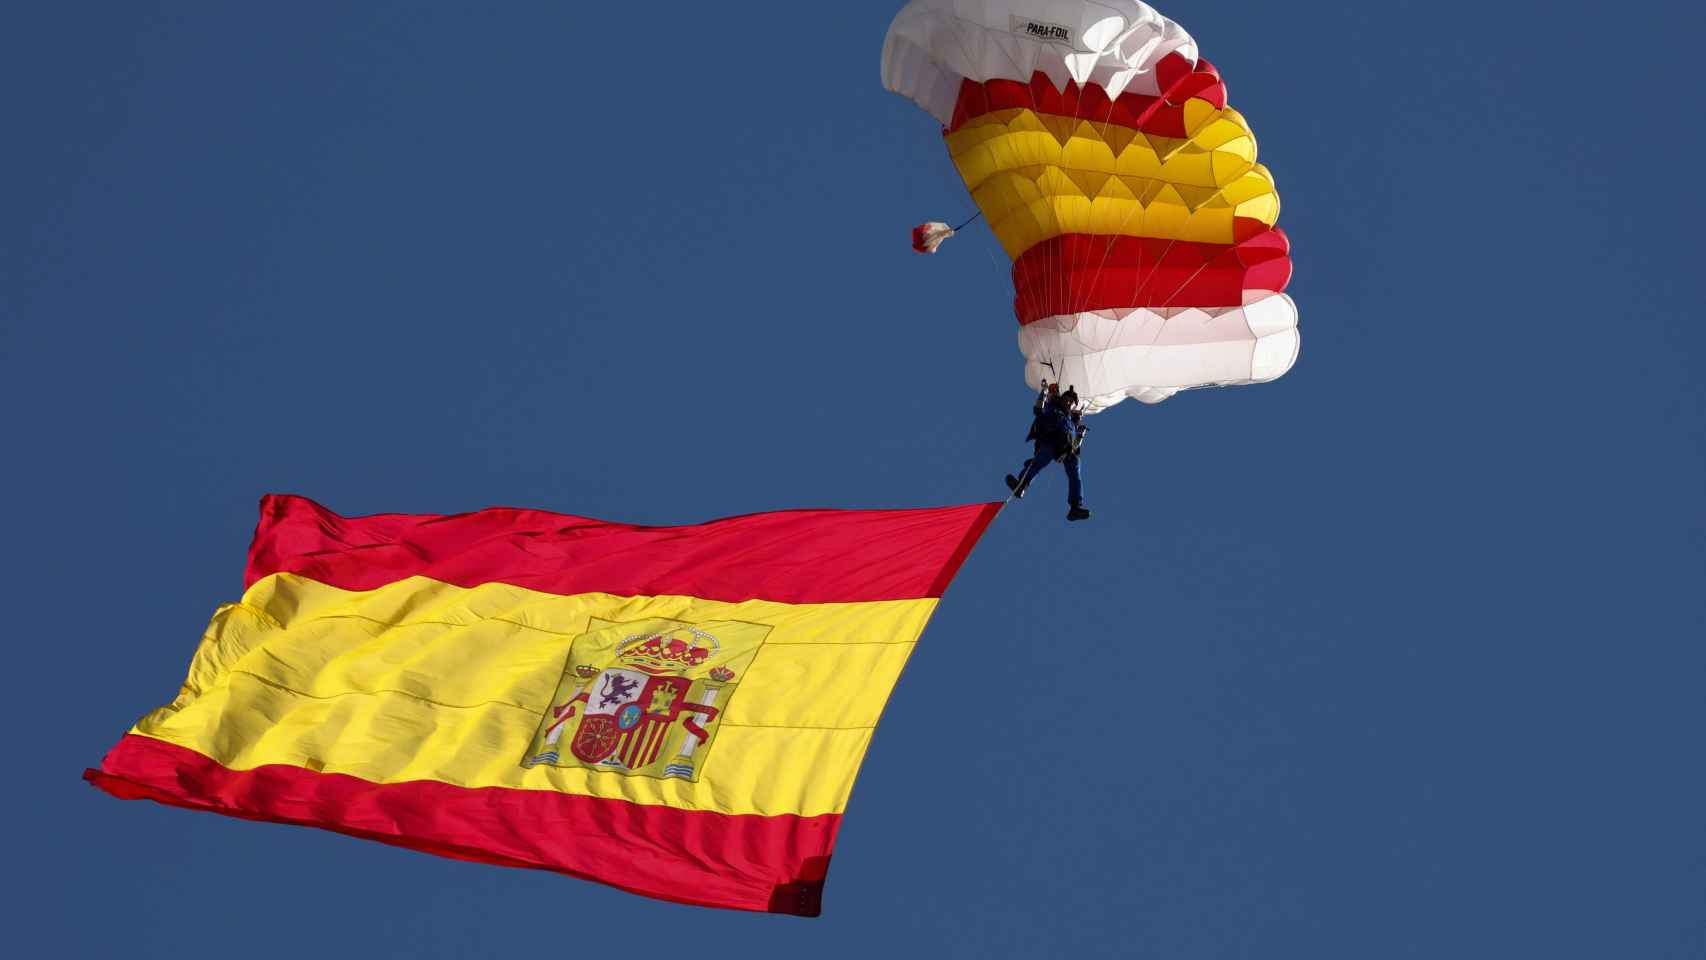 La bandera de España con uno de los miembros de la patrulla paracaídista del Ejército del Aire, durante el acto solemne de homenaje a la bandera nacional y desfile militar en el Día de la Hispanidad, a 12 de octubre de 2022, en Madrid.